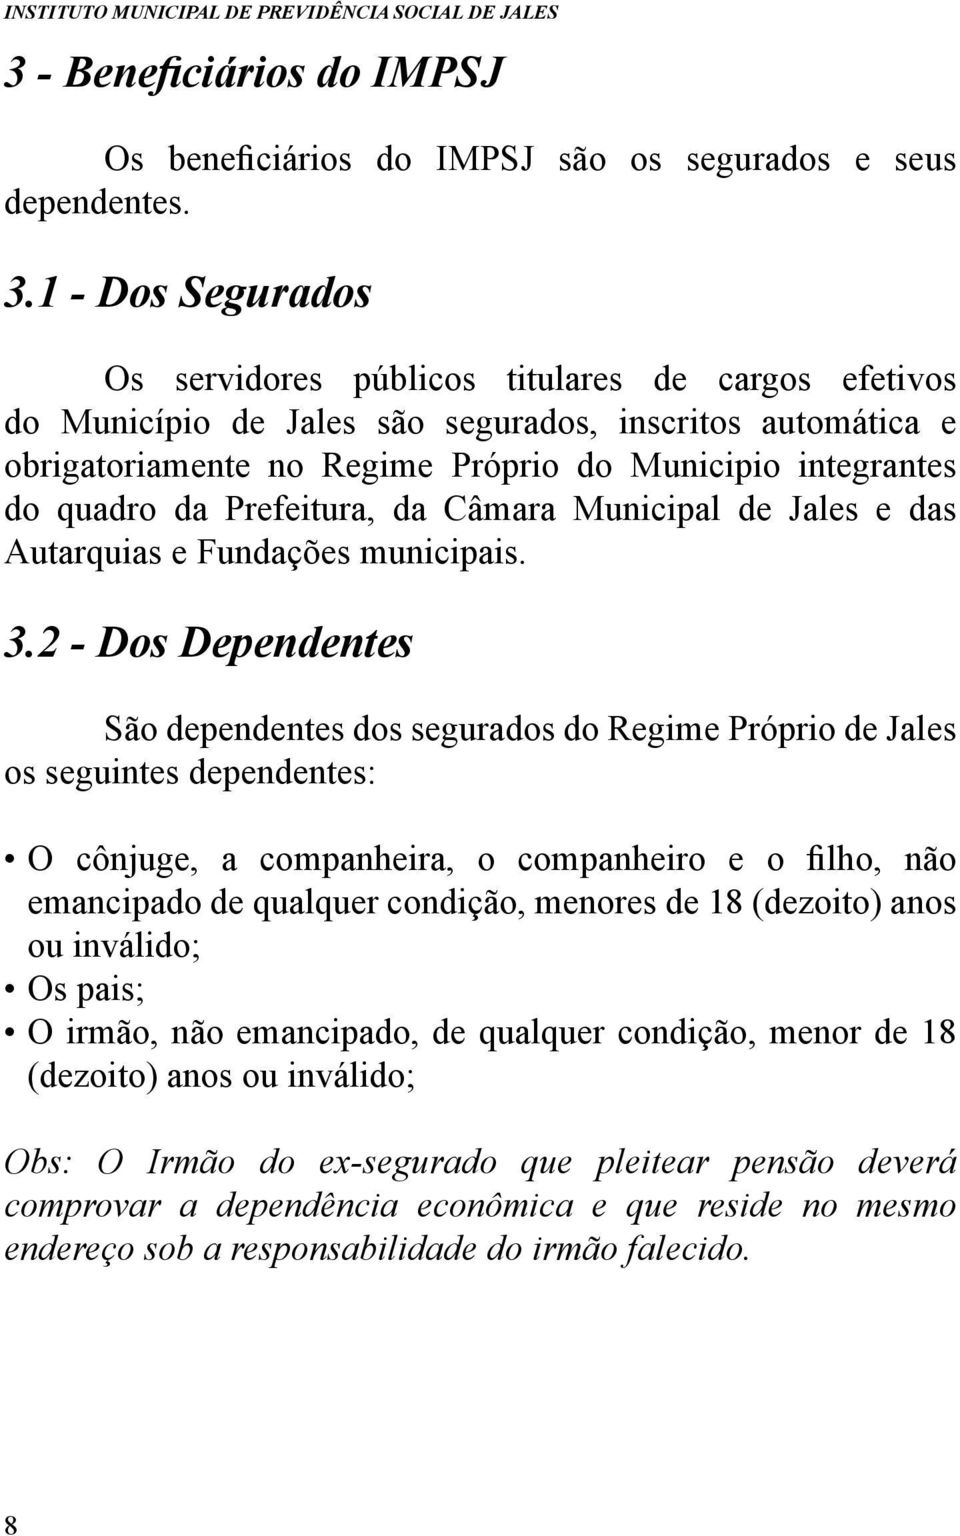 da Prefeitura, da Câmara Municipal de Jales e das Autarquias e Fundações municipais. 3.